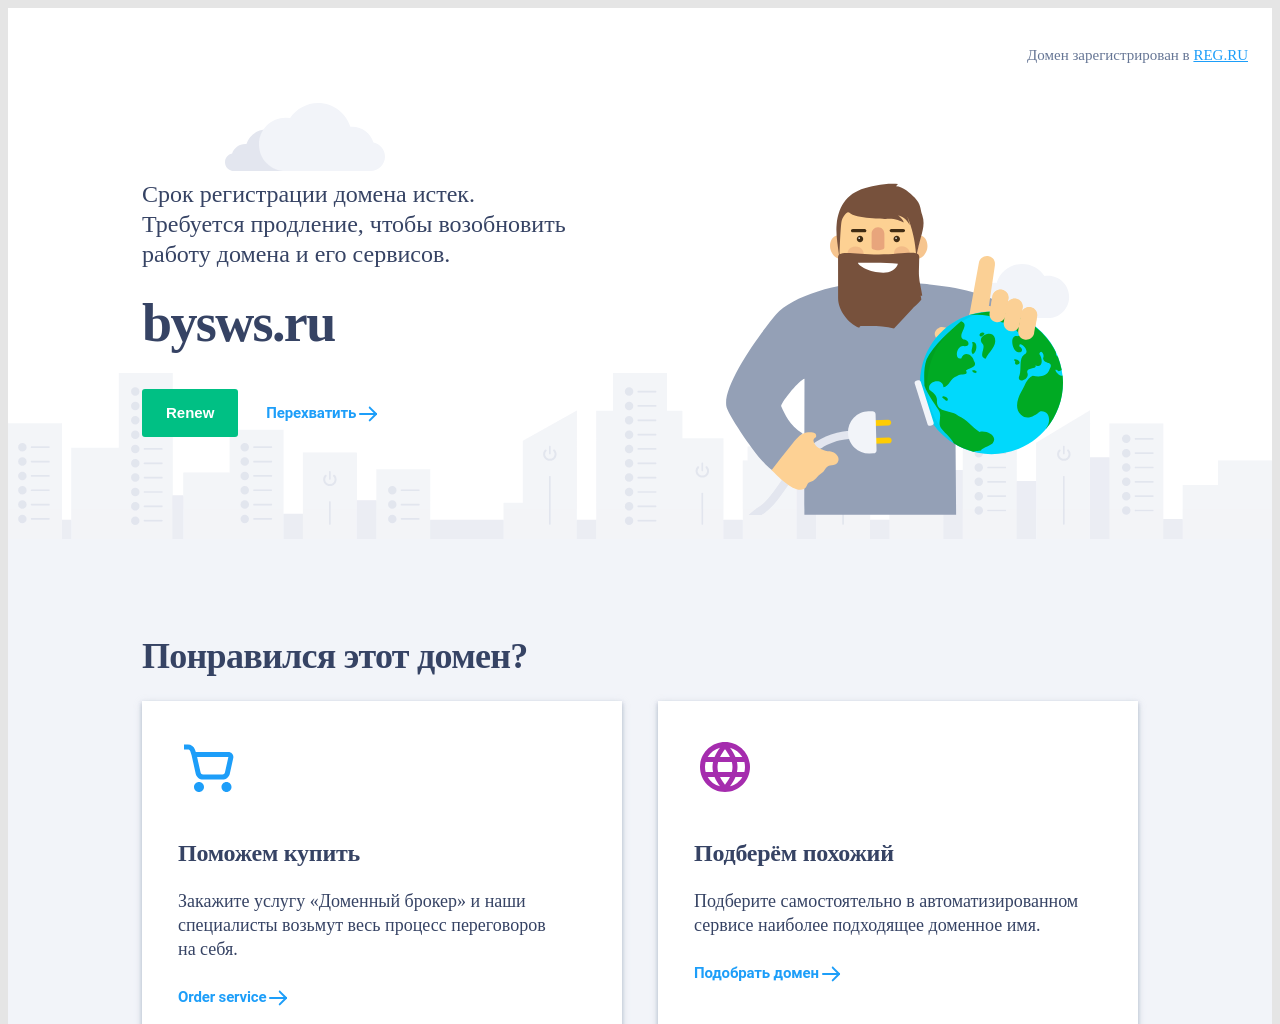 bysws.ru